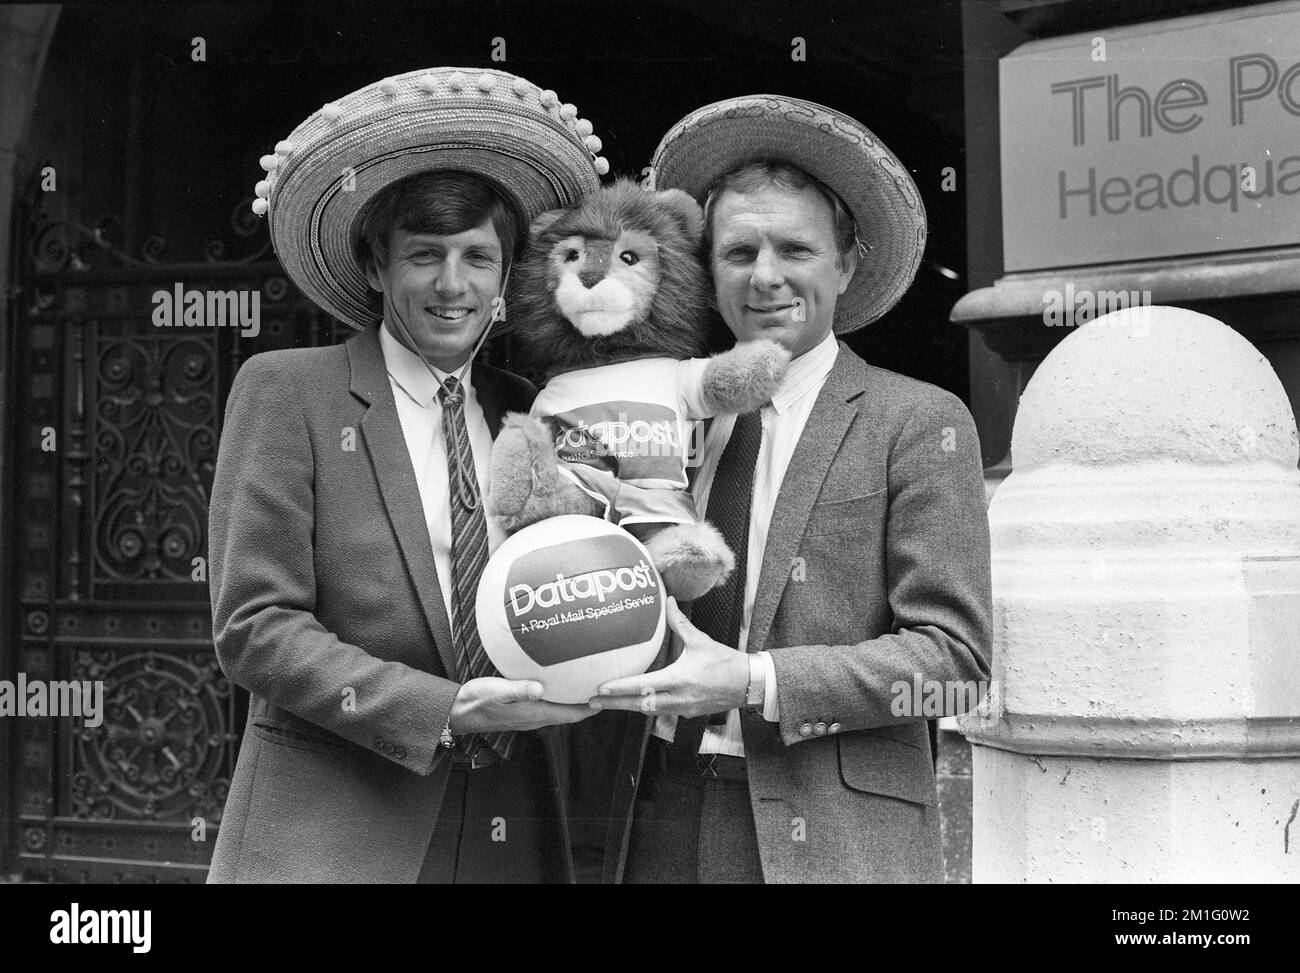 Martin Peters et Bobby Moore, vainqueurs de la coupe du monde de football d'Angleterre, et Willie, la mascotte Englands 1982 Banque D'Images